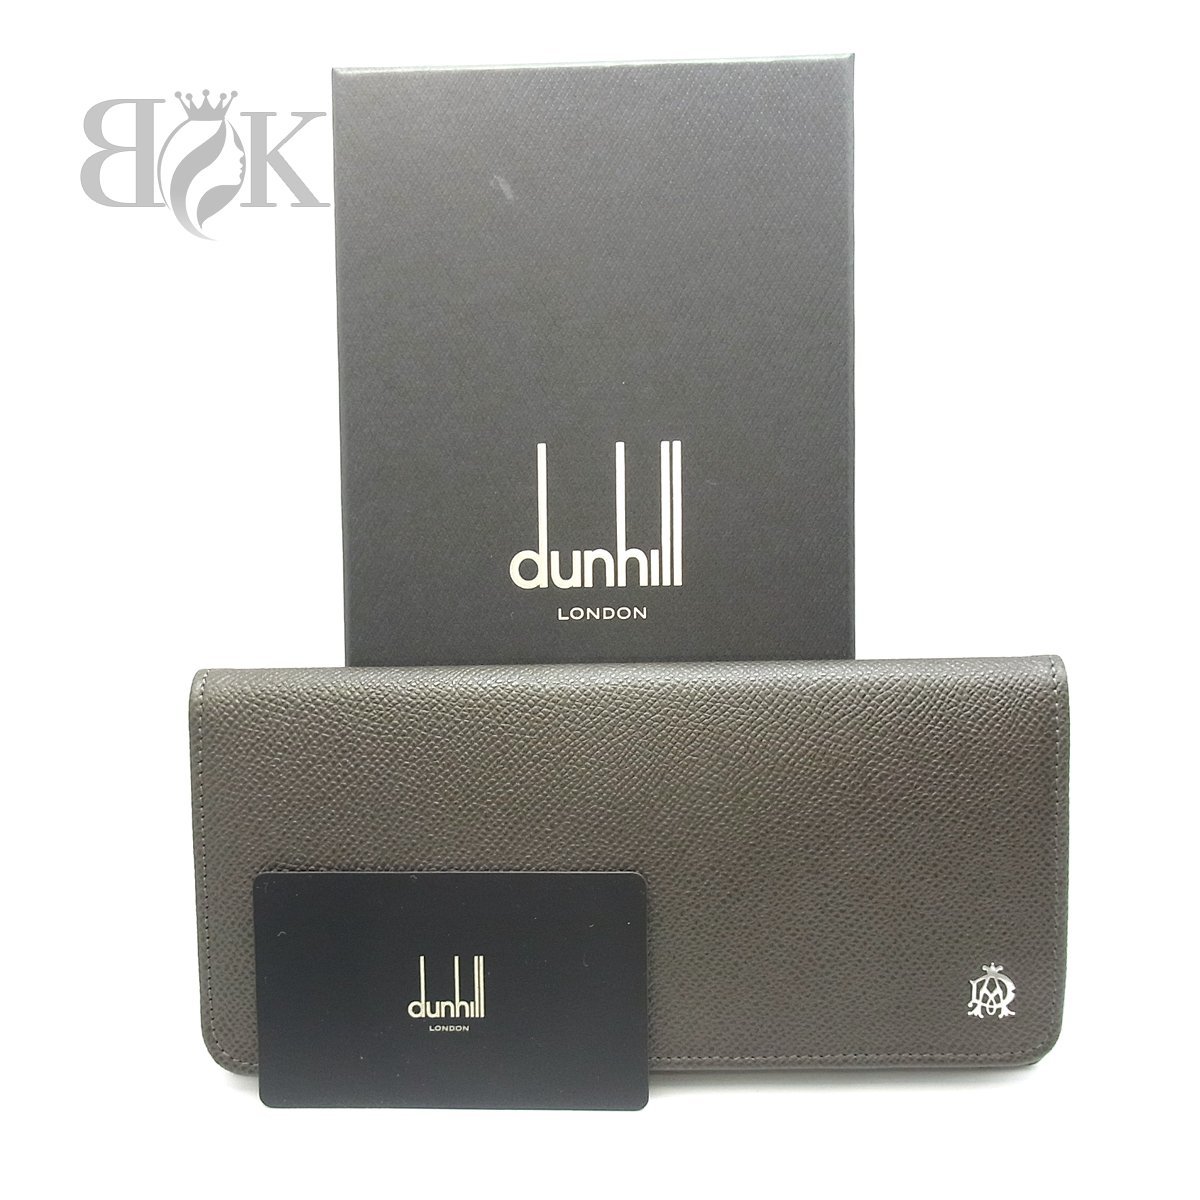  Dunhill  2... длинный кошелек   L2M110Z  карточка 10  темный   коричневый   неиспользованный товар  ●